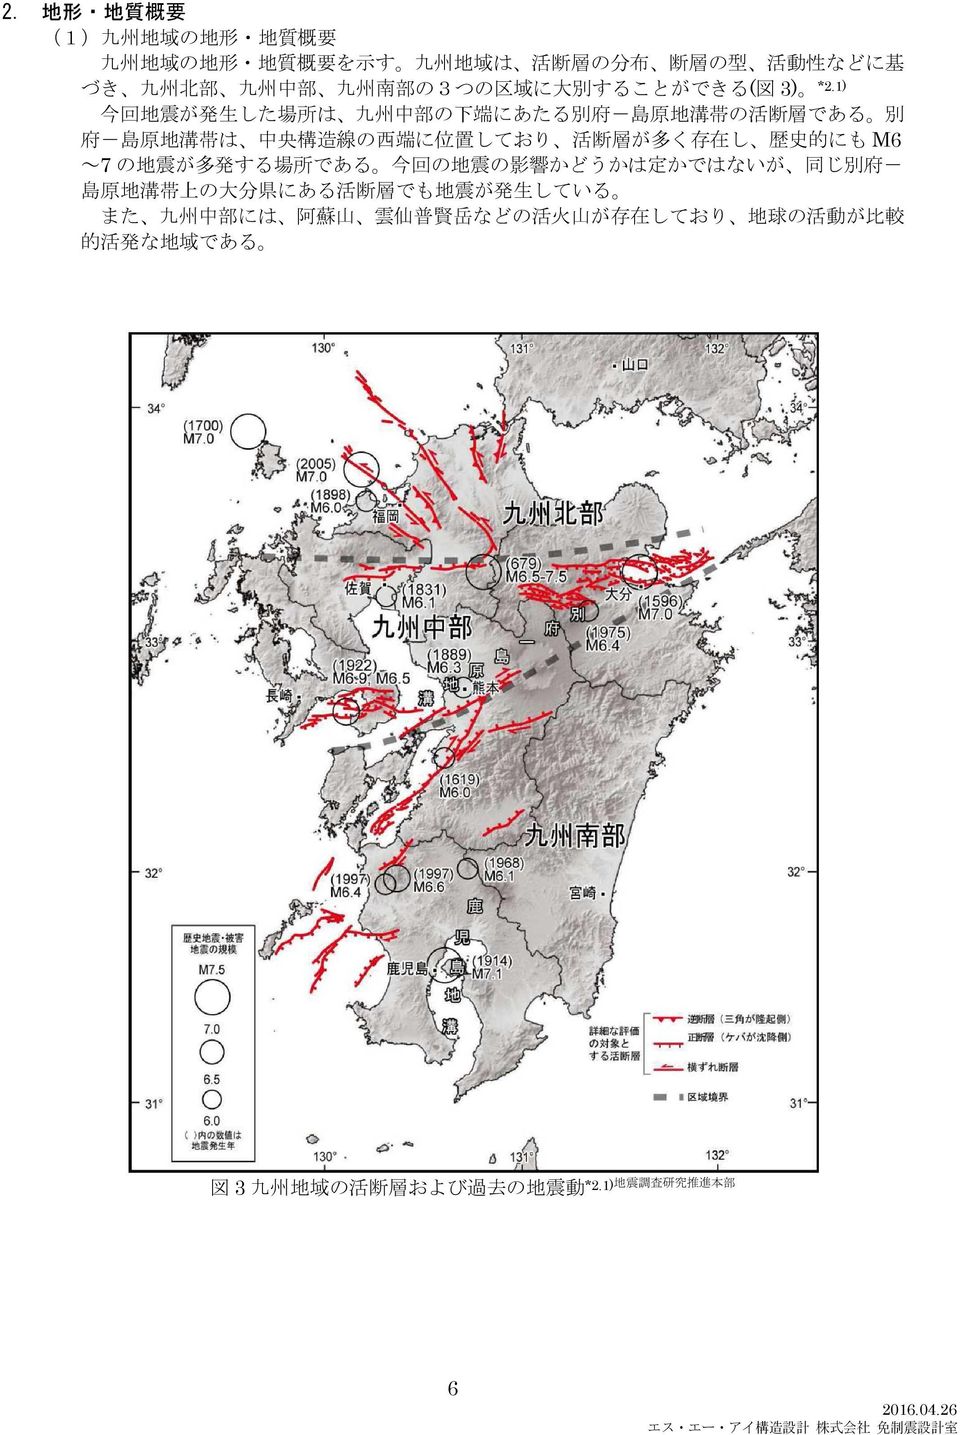 ) 今 回 地 震 が 発 生 した 場 所 は 九 州 中 部 の 下 端 にあたる 別 府 - 島 原 地 溝 帯 の 活 断 層 である 別 府 - 島 原 地 溝 帯 は 中 央 構 造 線 の 西 端 に 位 置 しており 活 断 層 が 多 く 存 在 し 歴 史 的